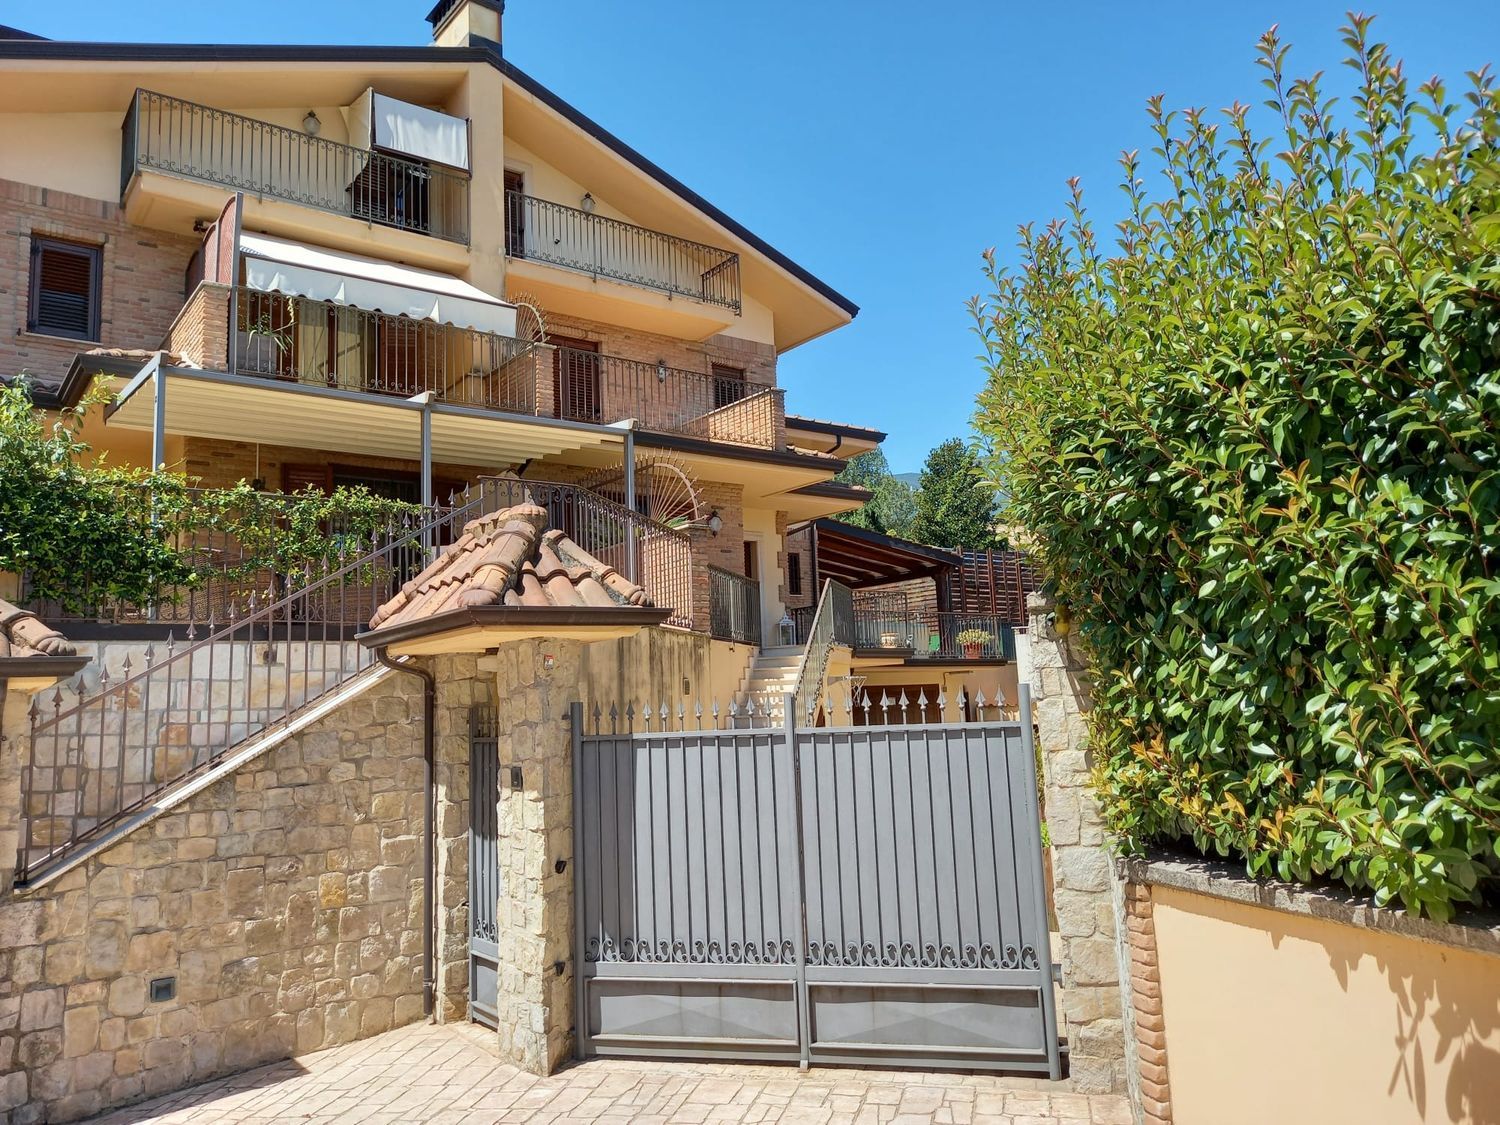 Villa Bifamiliare in vendita a Avellino, 5 locali, prezzo € 360.000 | PortaleAgenzieImmobiliari.it